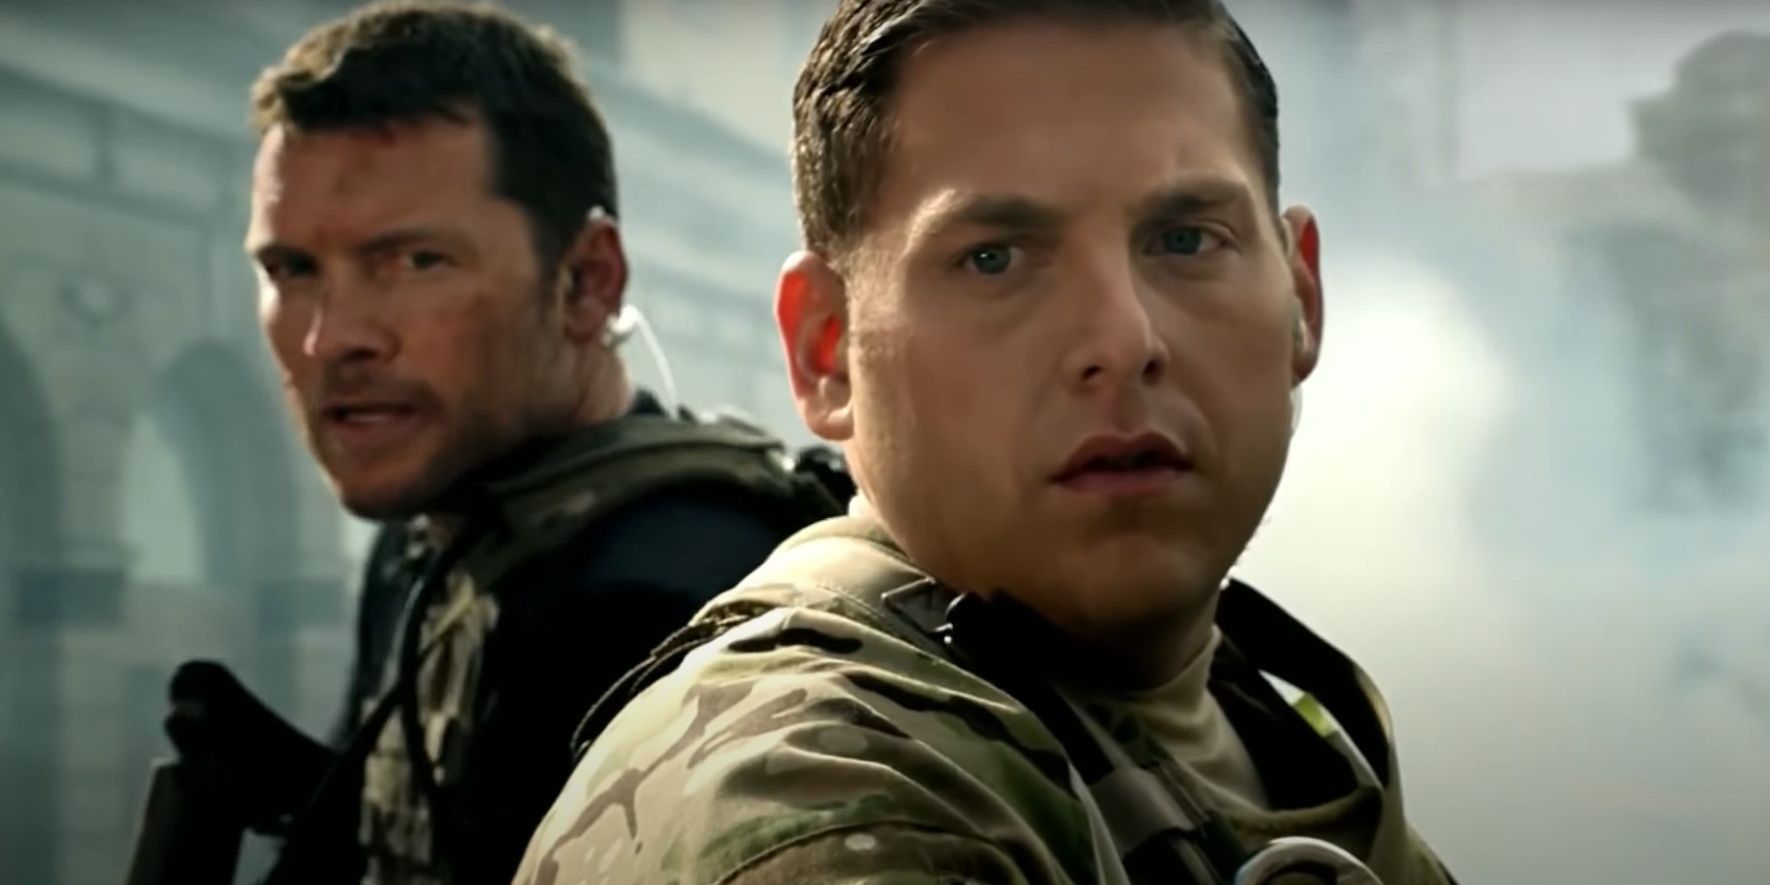 Sam Worthington and Jonah Hill in Call of Duty Modern Warfare 3